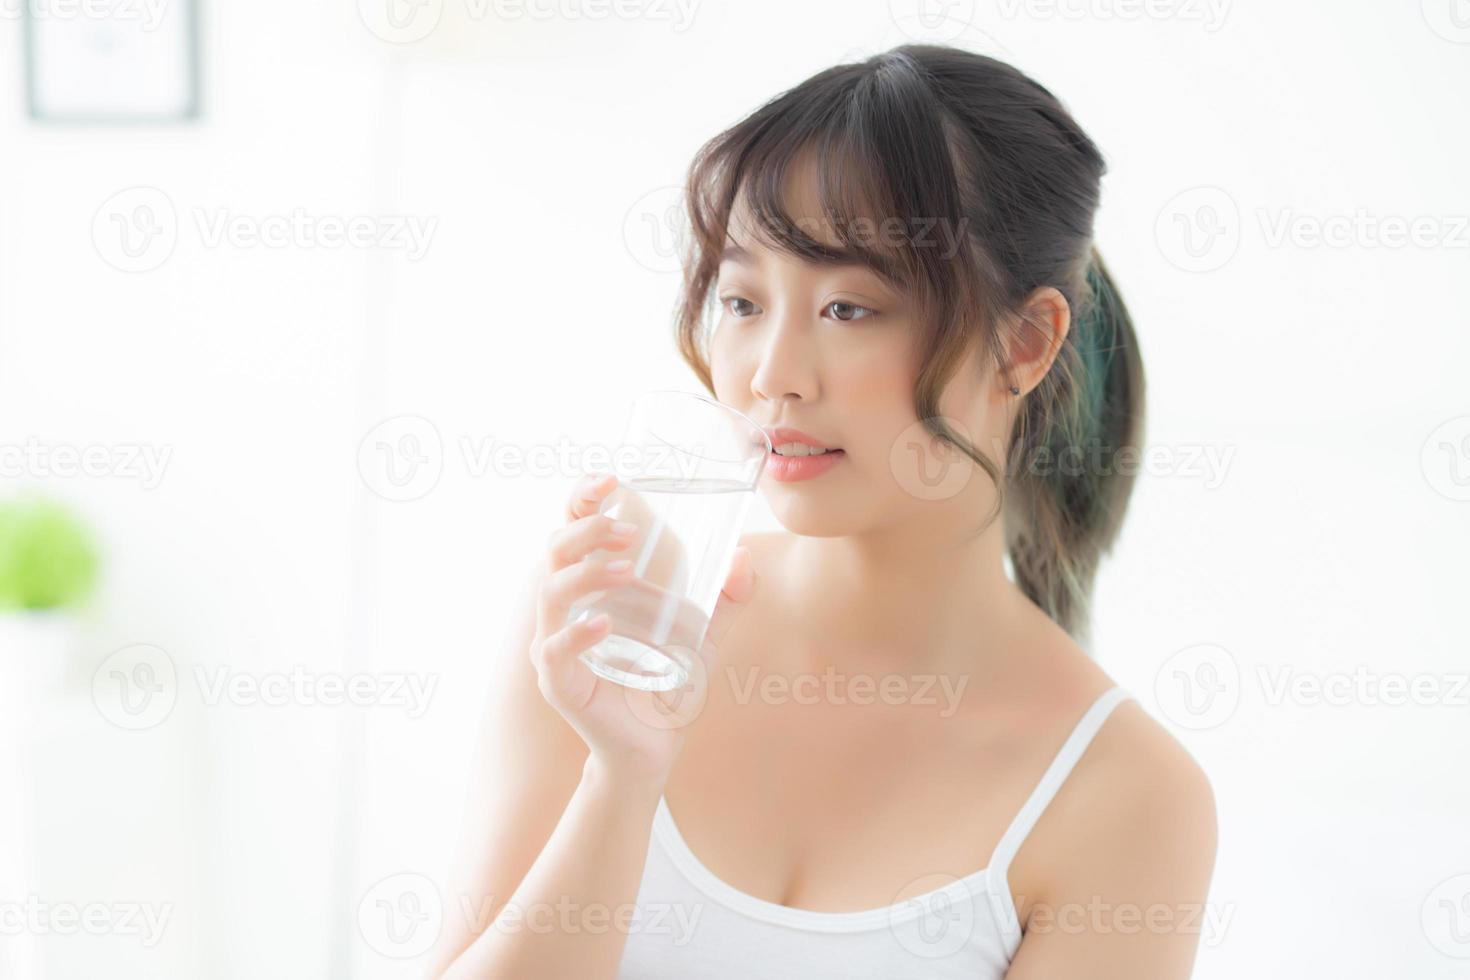 beau portrait jeune femme asiatique caucasienne souriante avec nutrition assoiffée et buvant un verre d'eau minérale avec frais et heureux, alimentation asiatique fille pour des soins sains et bien-être, concept de mode de vie. photo